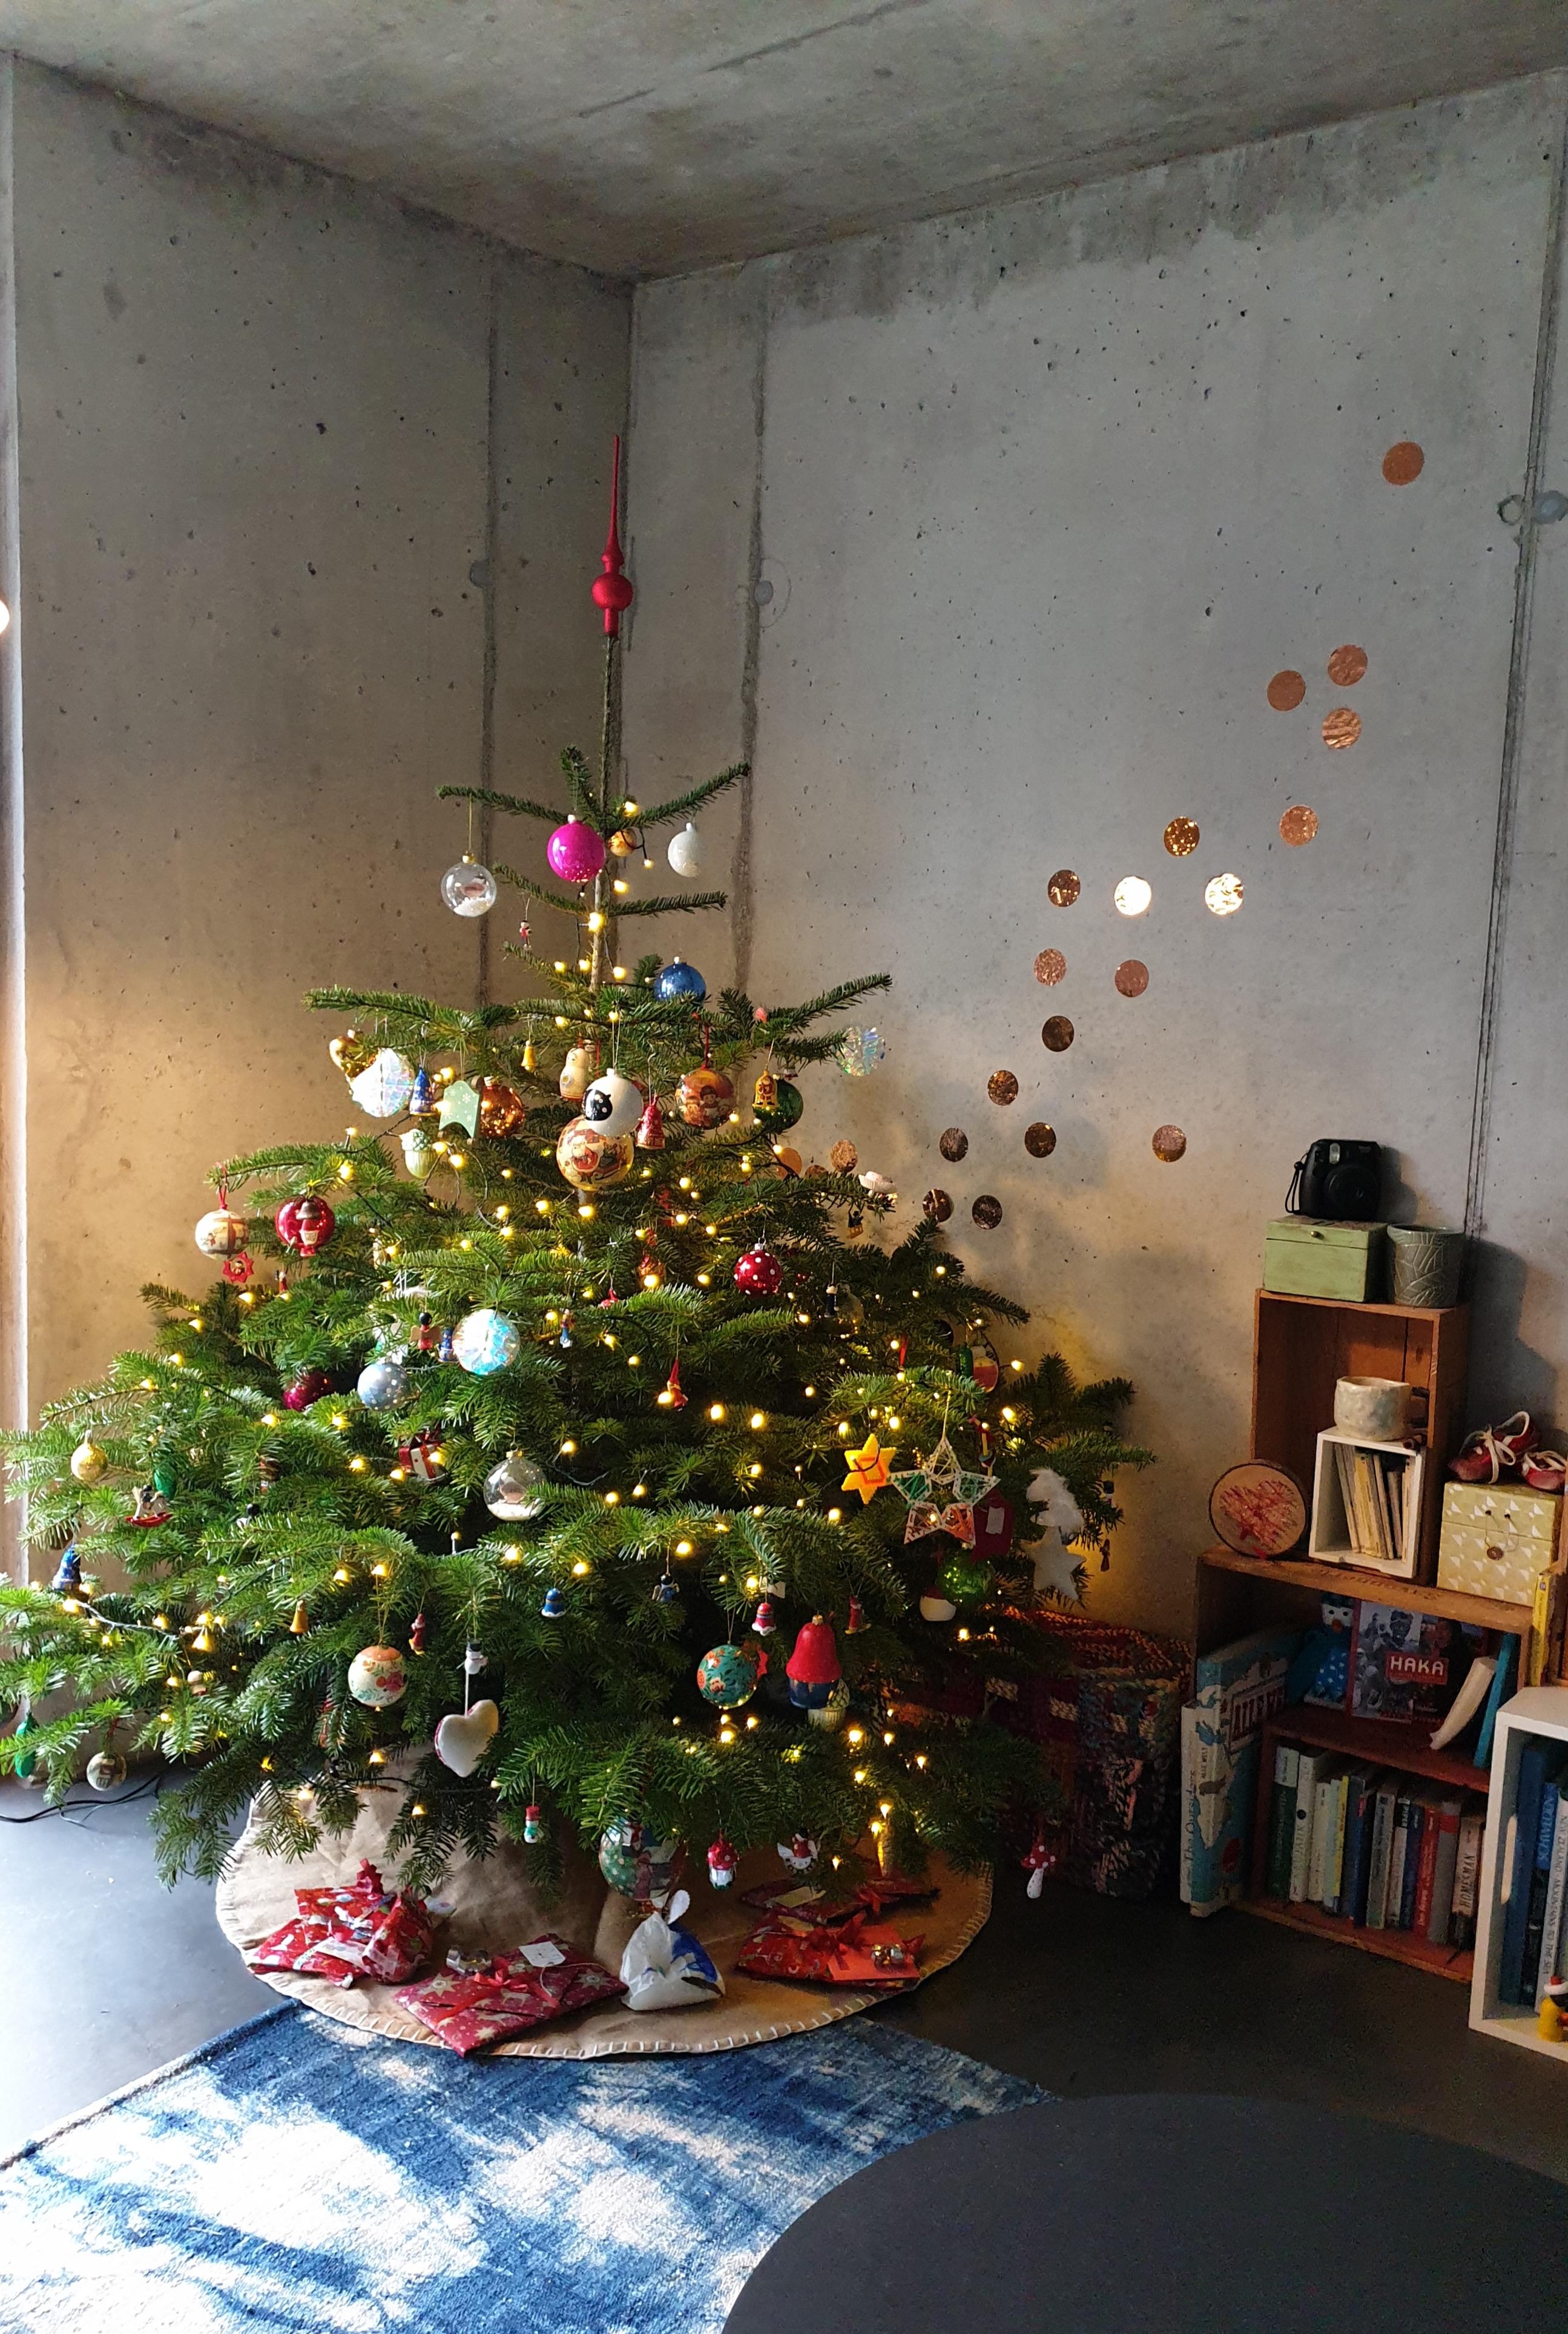 Bäumchen Kunterbunt..Frohe Weihnachten!
#weihnachtlich#Tannenbaum#Weihnachtsbaum